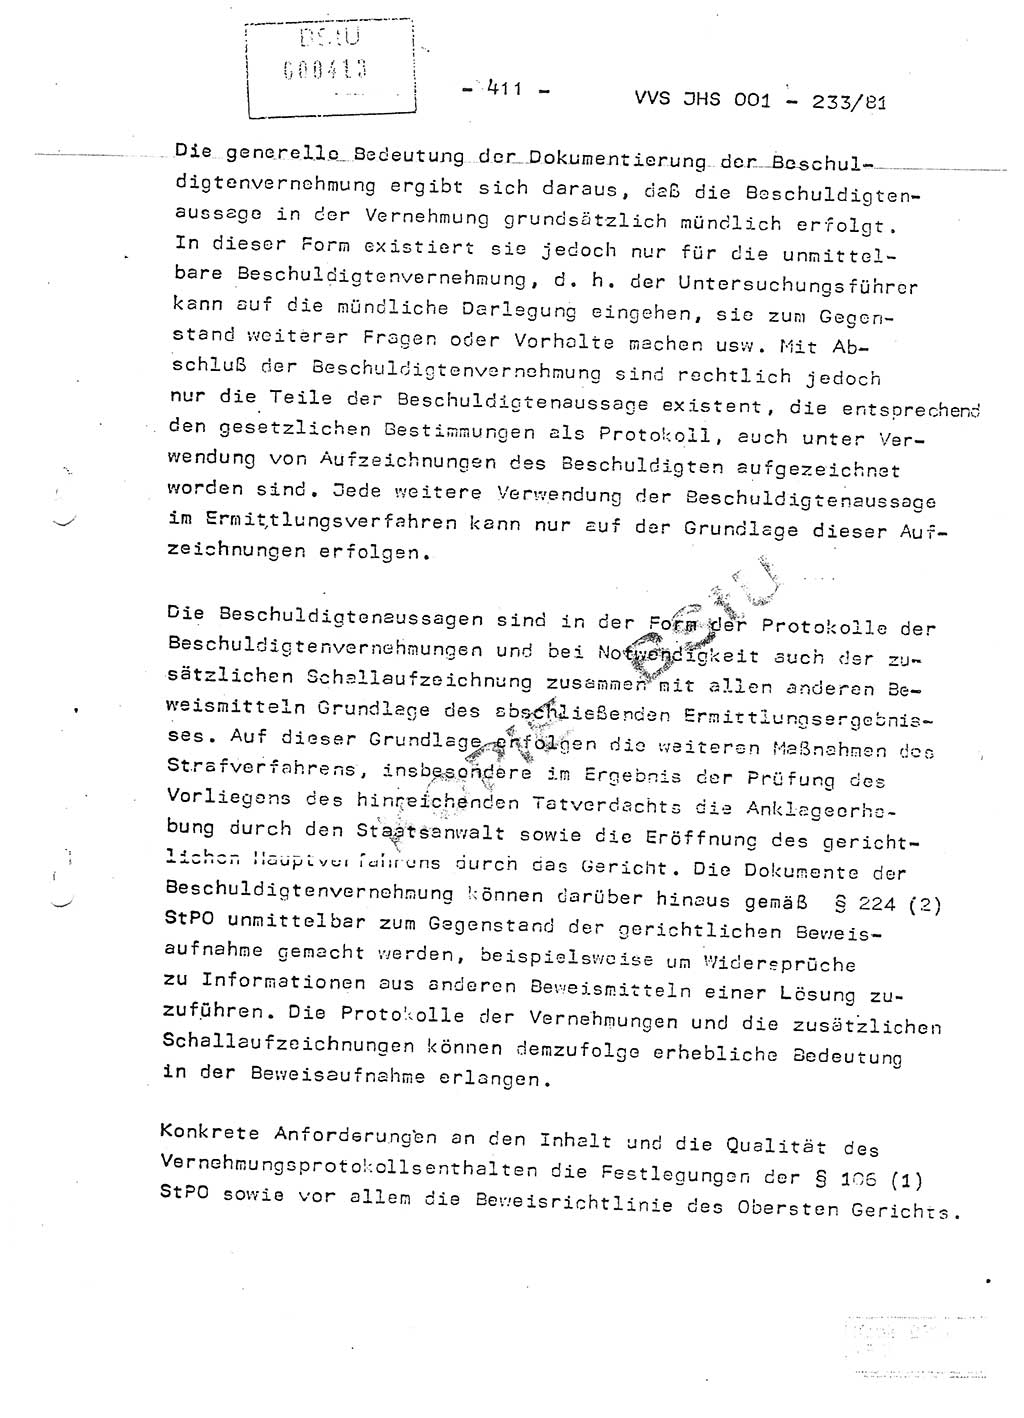 Dissertation Oberstleutnant Horst Zank (JHS), Oberstleutnant Dr. Karl-Heinz Knoblauch (JHS), Oberstleutnant Gustav-Adolf Kowalewski (HA Ⅸ), Oberstleutnant Wolfgang Plötner (HA Ⅸ), Ministerium für Staatssicherheit (MfS) [Deutsche Demokratische Republik (DDR)], Juristische Hochschule (JHS), Vertrauliche Verschlußsache (VVS) o001-233/81, Potsdam 1981, Blatt 411 (Diss. MfS DDR JHS VVS o001-233/81 1981, Bl. 411)